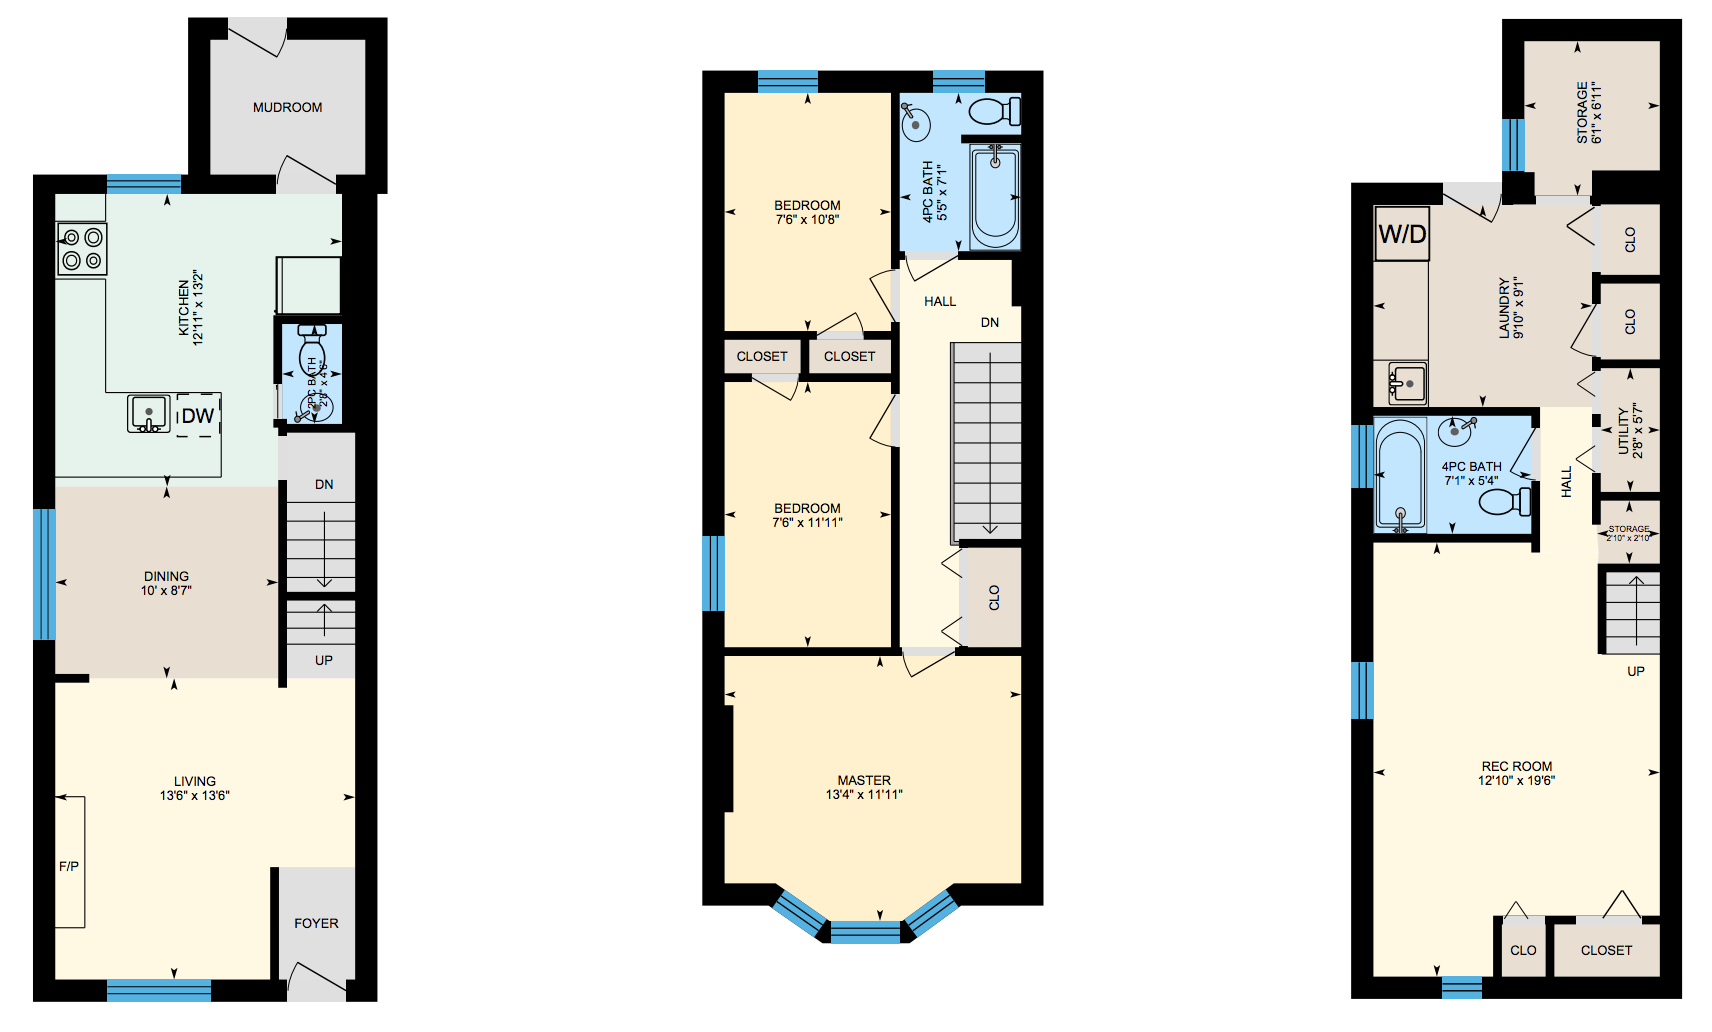 32 Benson Ave floor plan.png